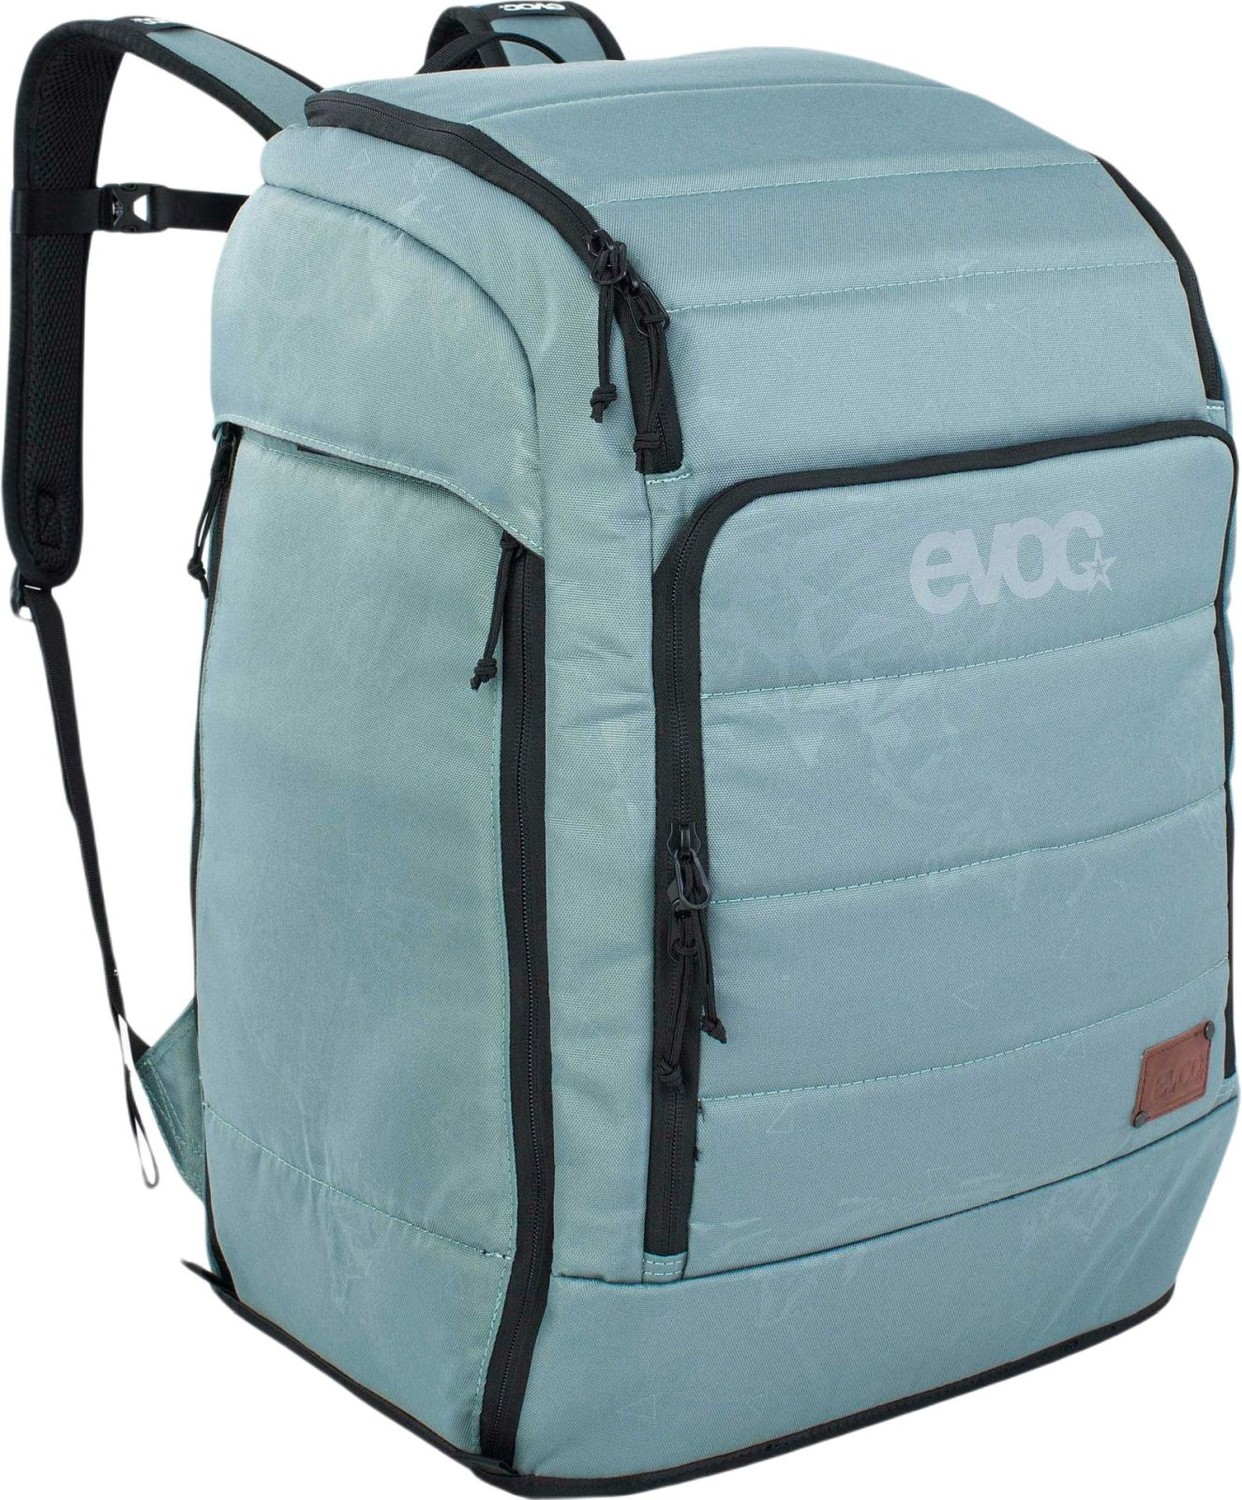 Evoc Gear Backpack 60 - steel uni